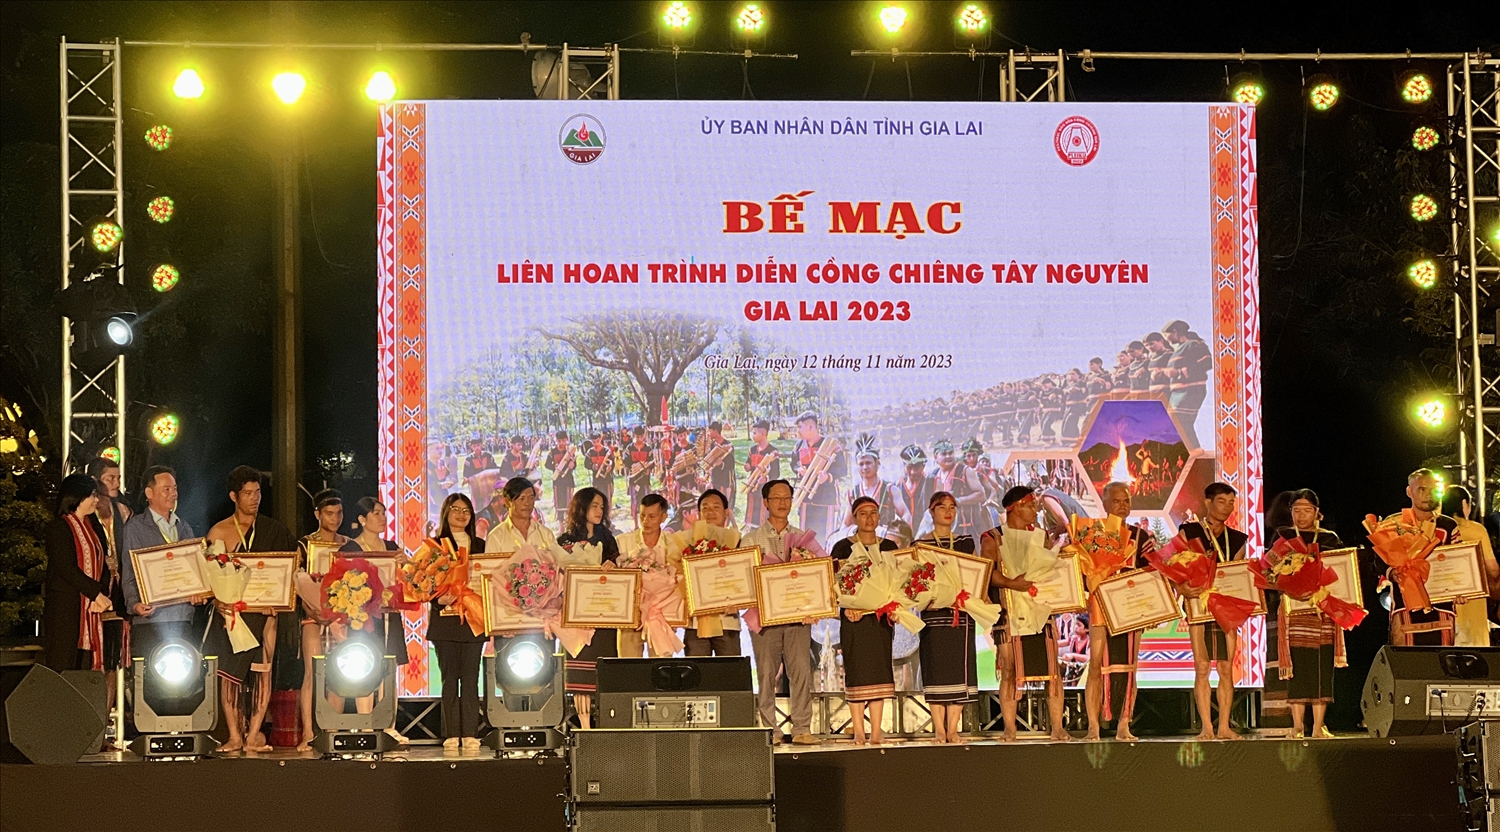 UBND tỉnh Gia Lai trao Bằng khen cho các tập thể, cá nhân có nhiều đóng góp và tham gia tích cực các hoạt động của Tuần Văn hóa - Du lịch Gia Lai năm 2023, trong đó có Festival cồng chiêng 